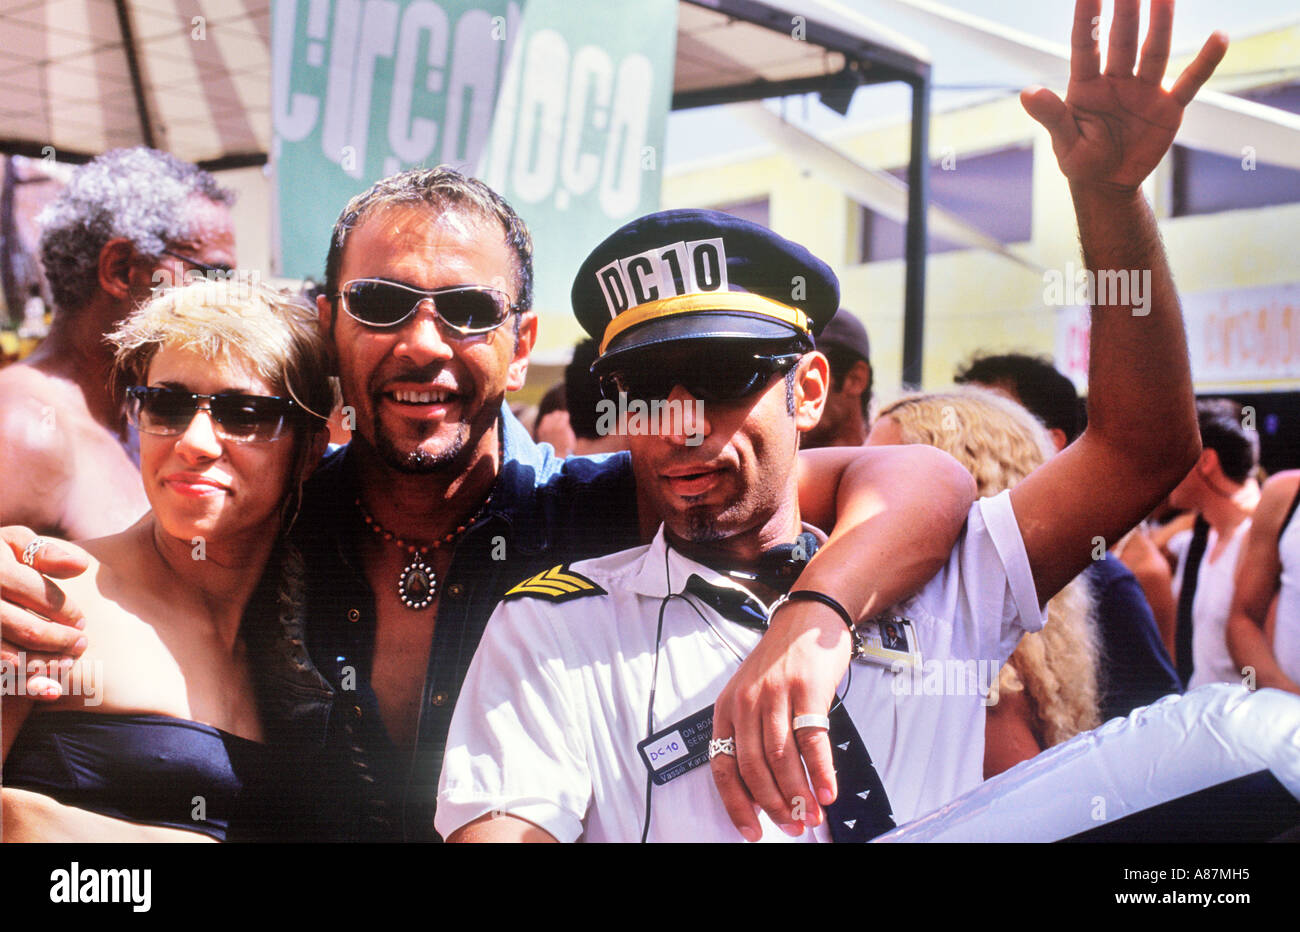 Gruppe von Menschen im Circo Loco im DC10 Ibiza Stockfoto